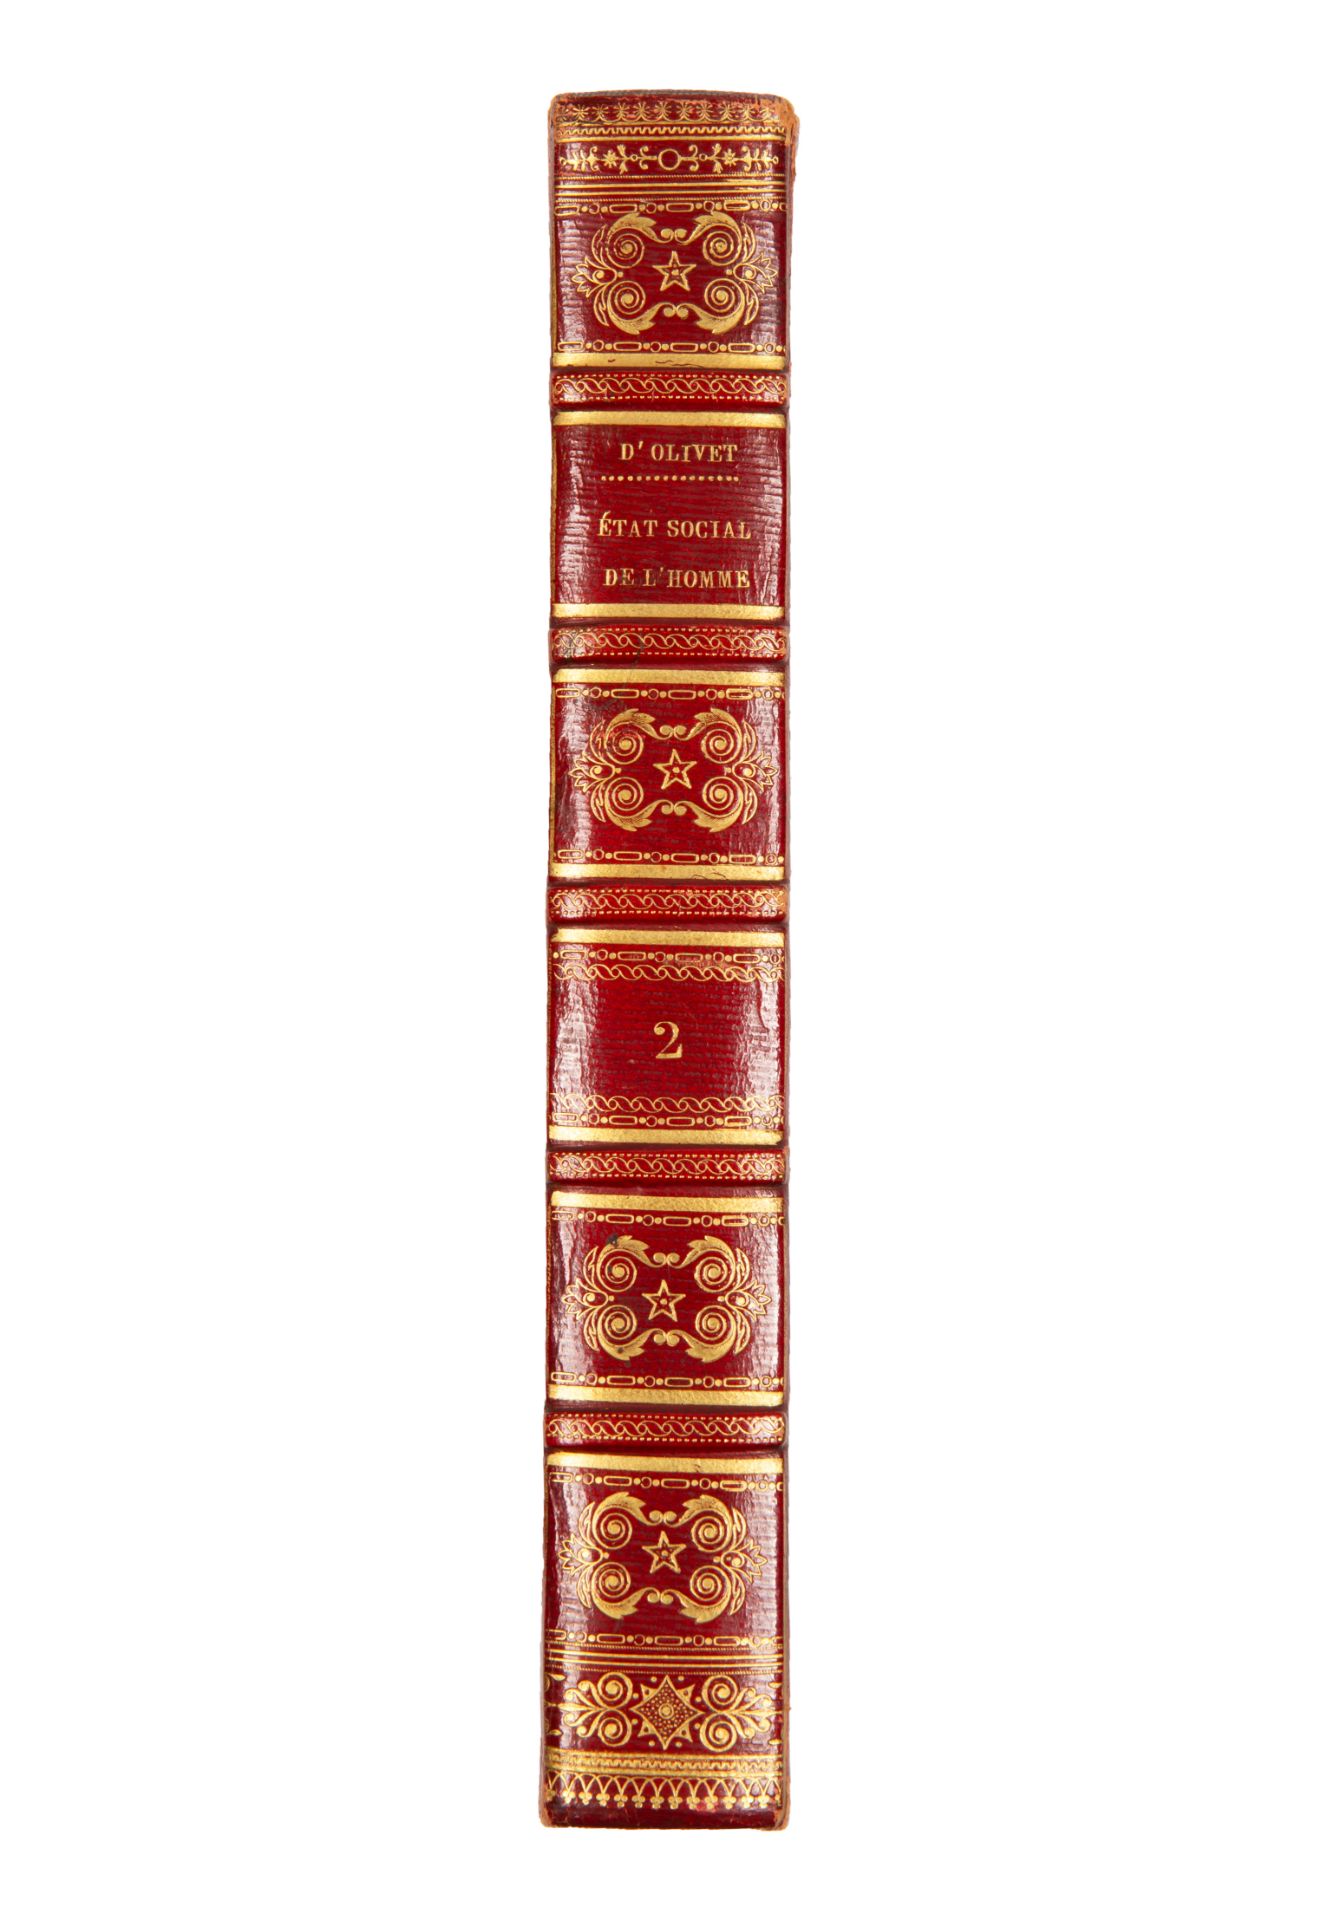 [SUPERB IMPERIAL PRESENTATION COPY] FABRE D’OLIVET, DE L’ETAT SOCIAL DE L’HOMME, 1822 - Image 9 of 12